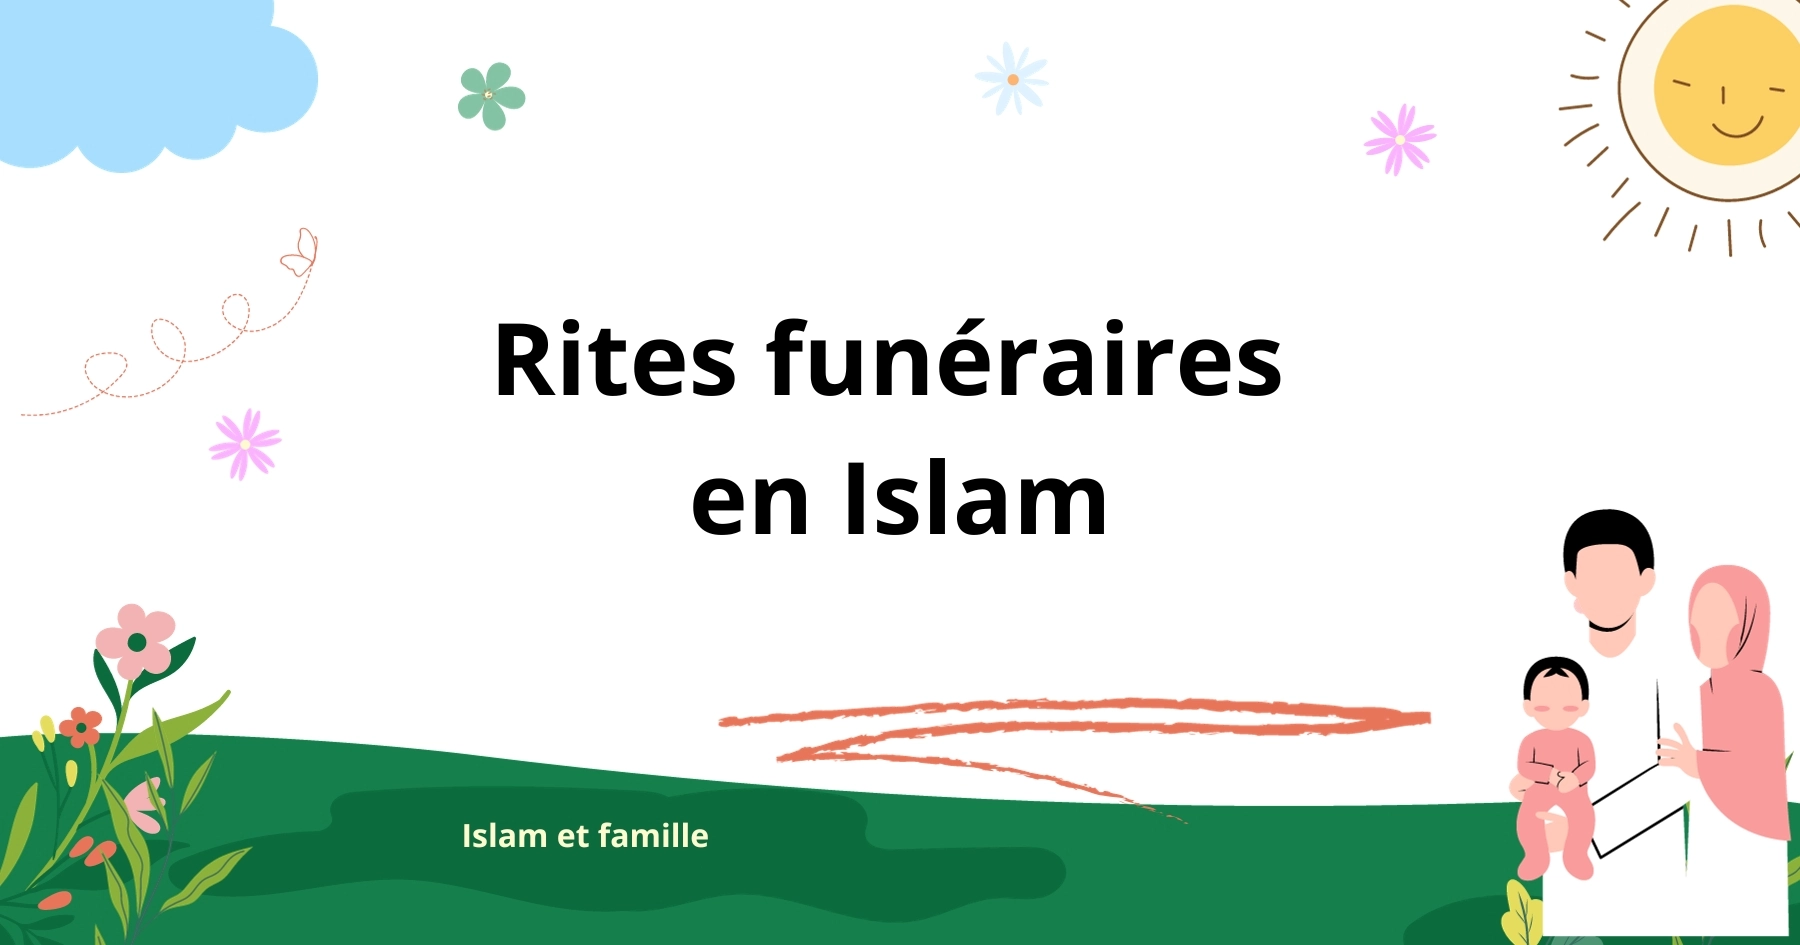 Rites funéraires en Islam